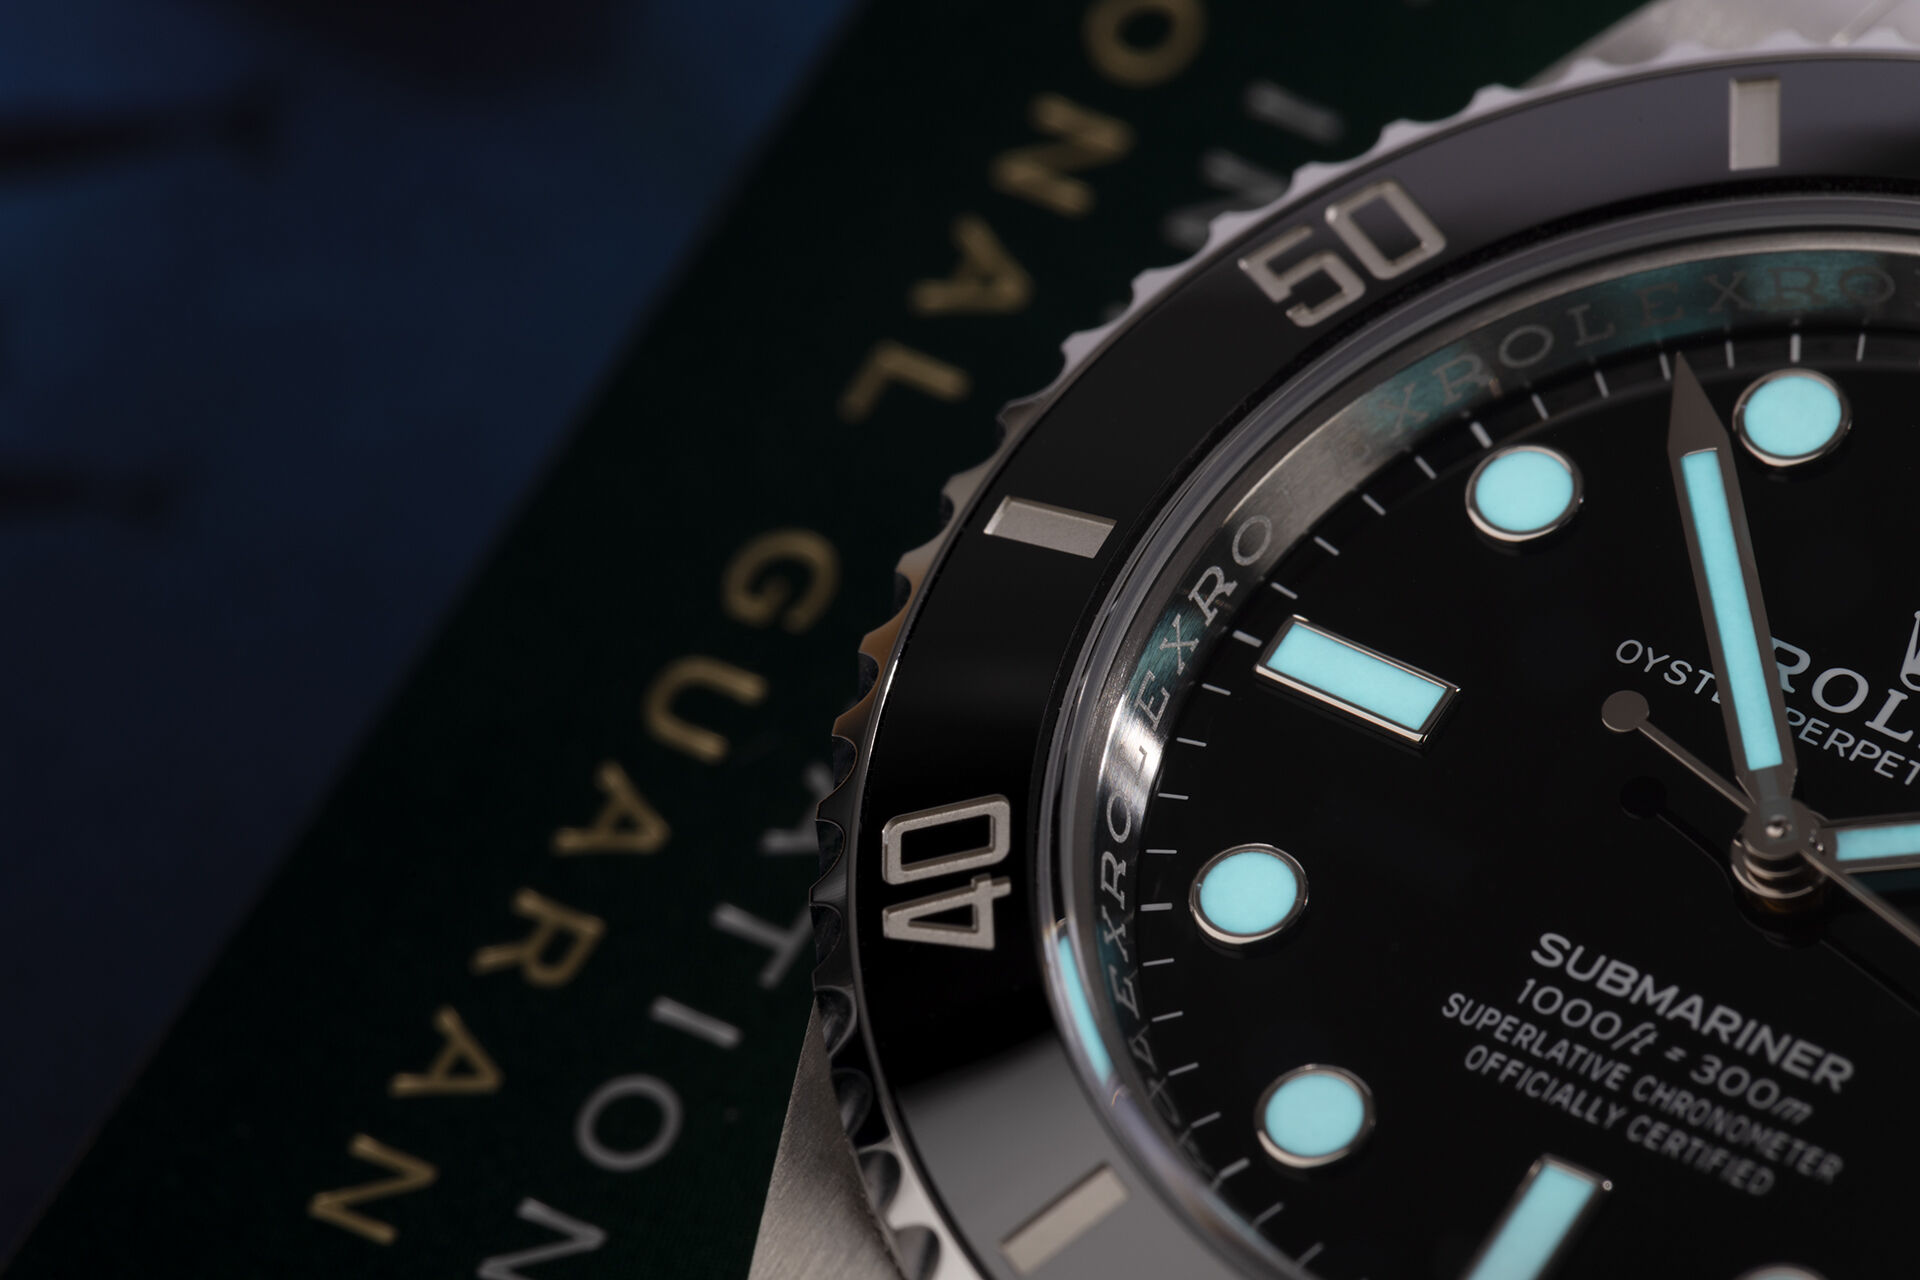 ref 126610LN | 5 Year Rolex Warranty | Rolex Submariner Date